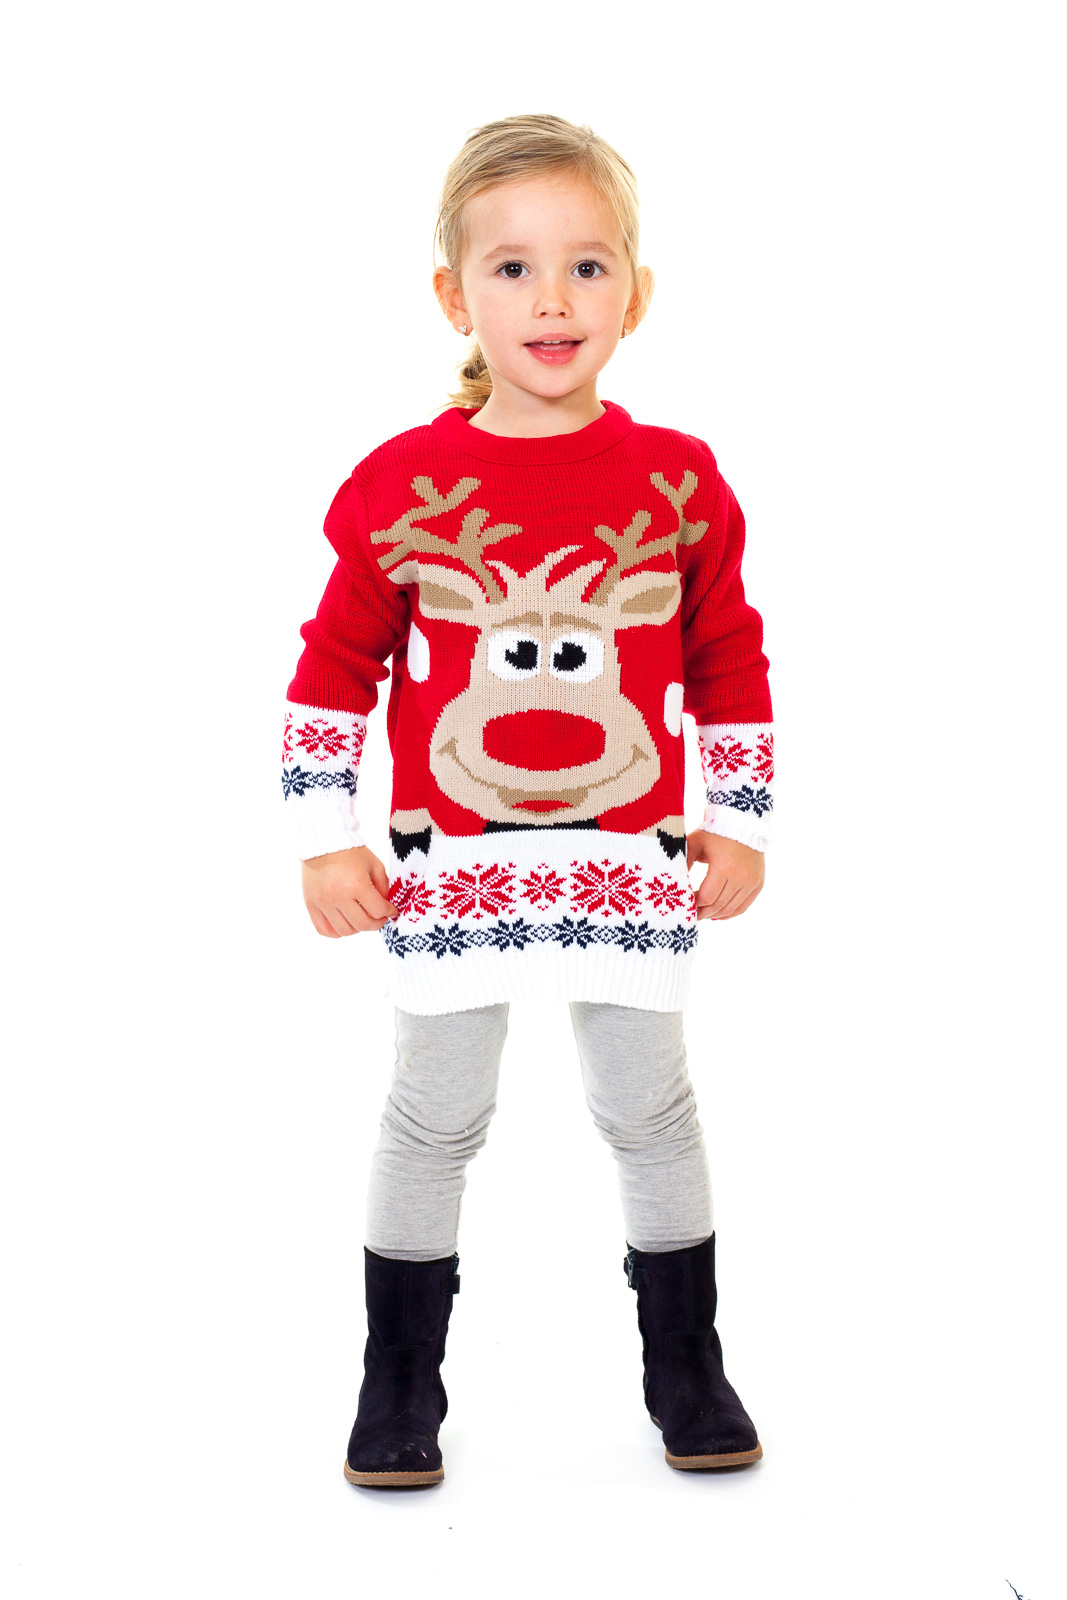 Kersttrui voor kinderen met Rudolph het - gratis bezorging